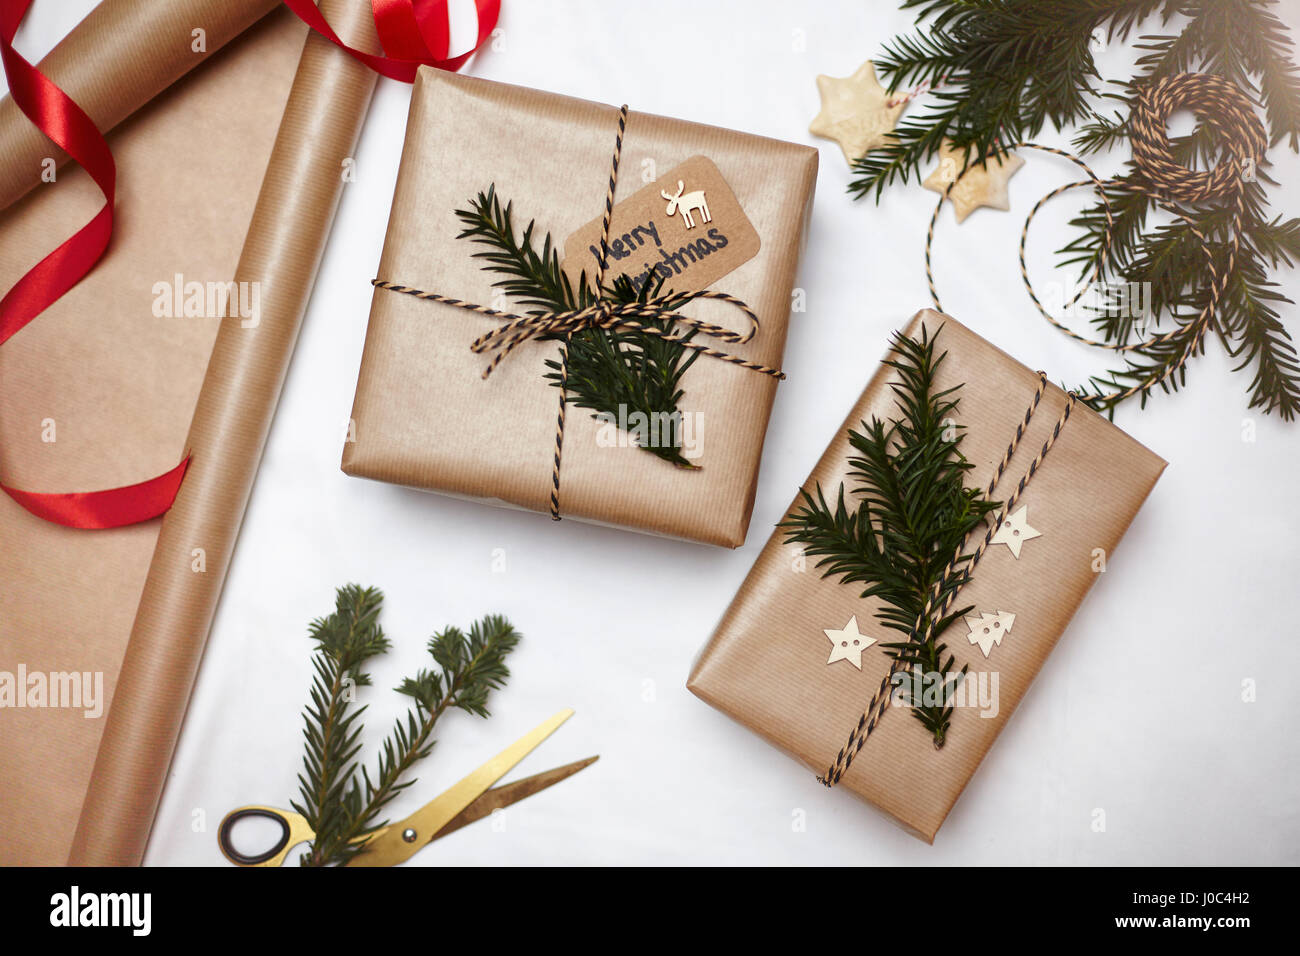 Weihnachtsgeschenke verpackt in braunem Papier, dekoriert mit Farn und String, Draufsicht Stockfoto